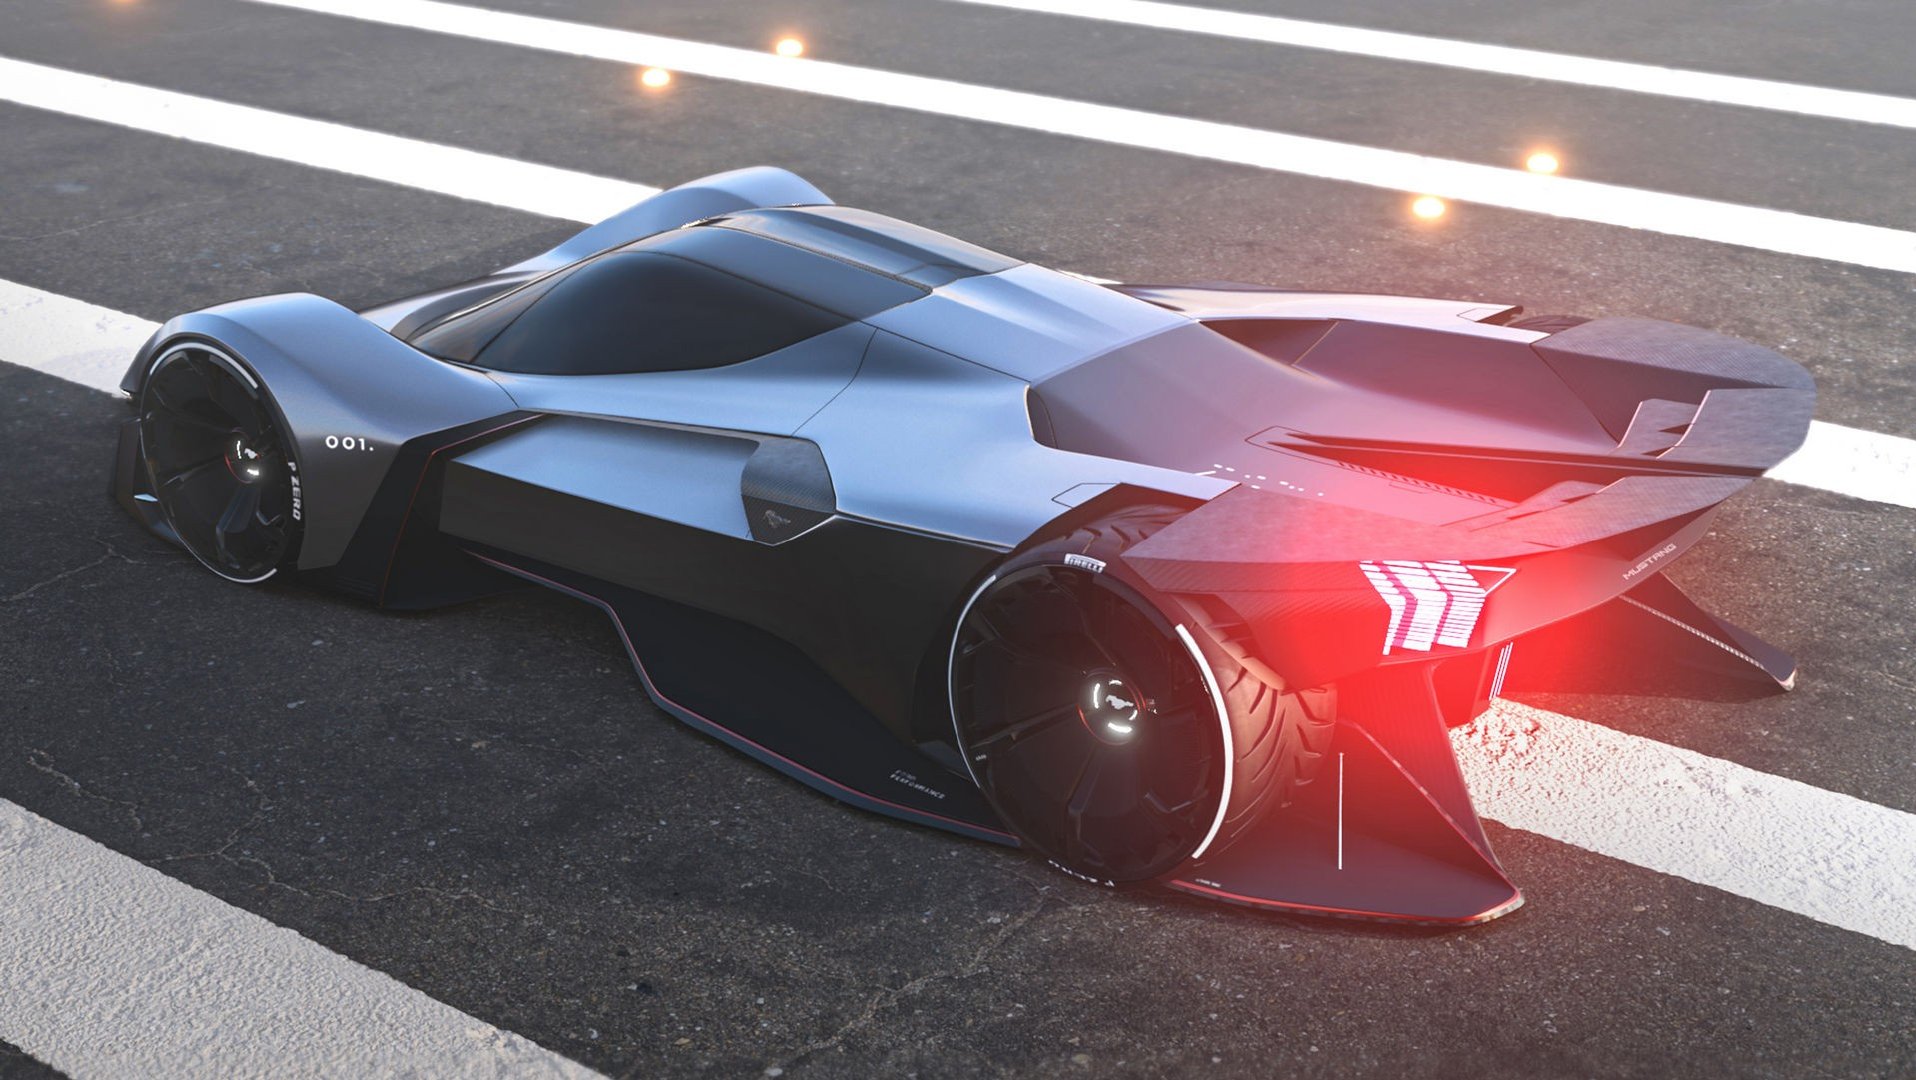 福特赞助的一个项目向我们展示了未来的野马超级跑车